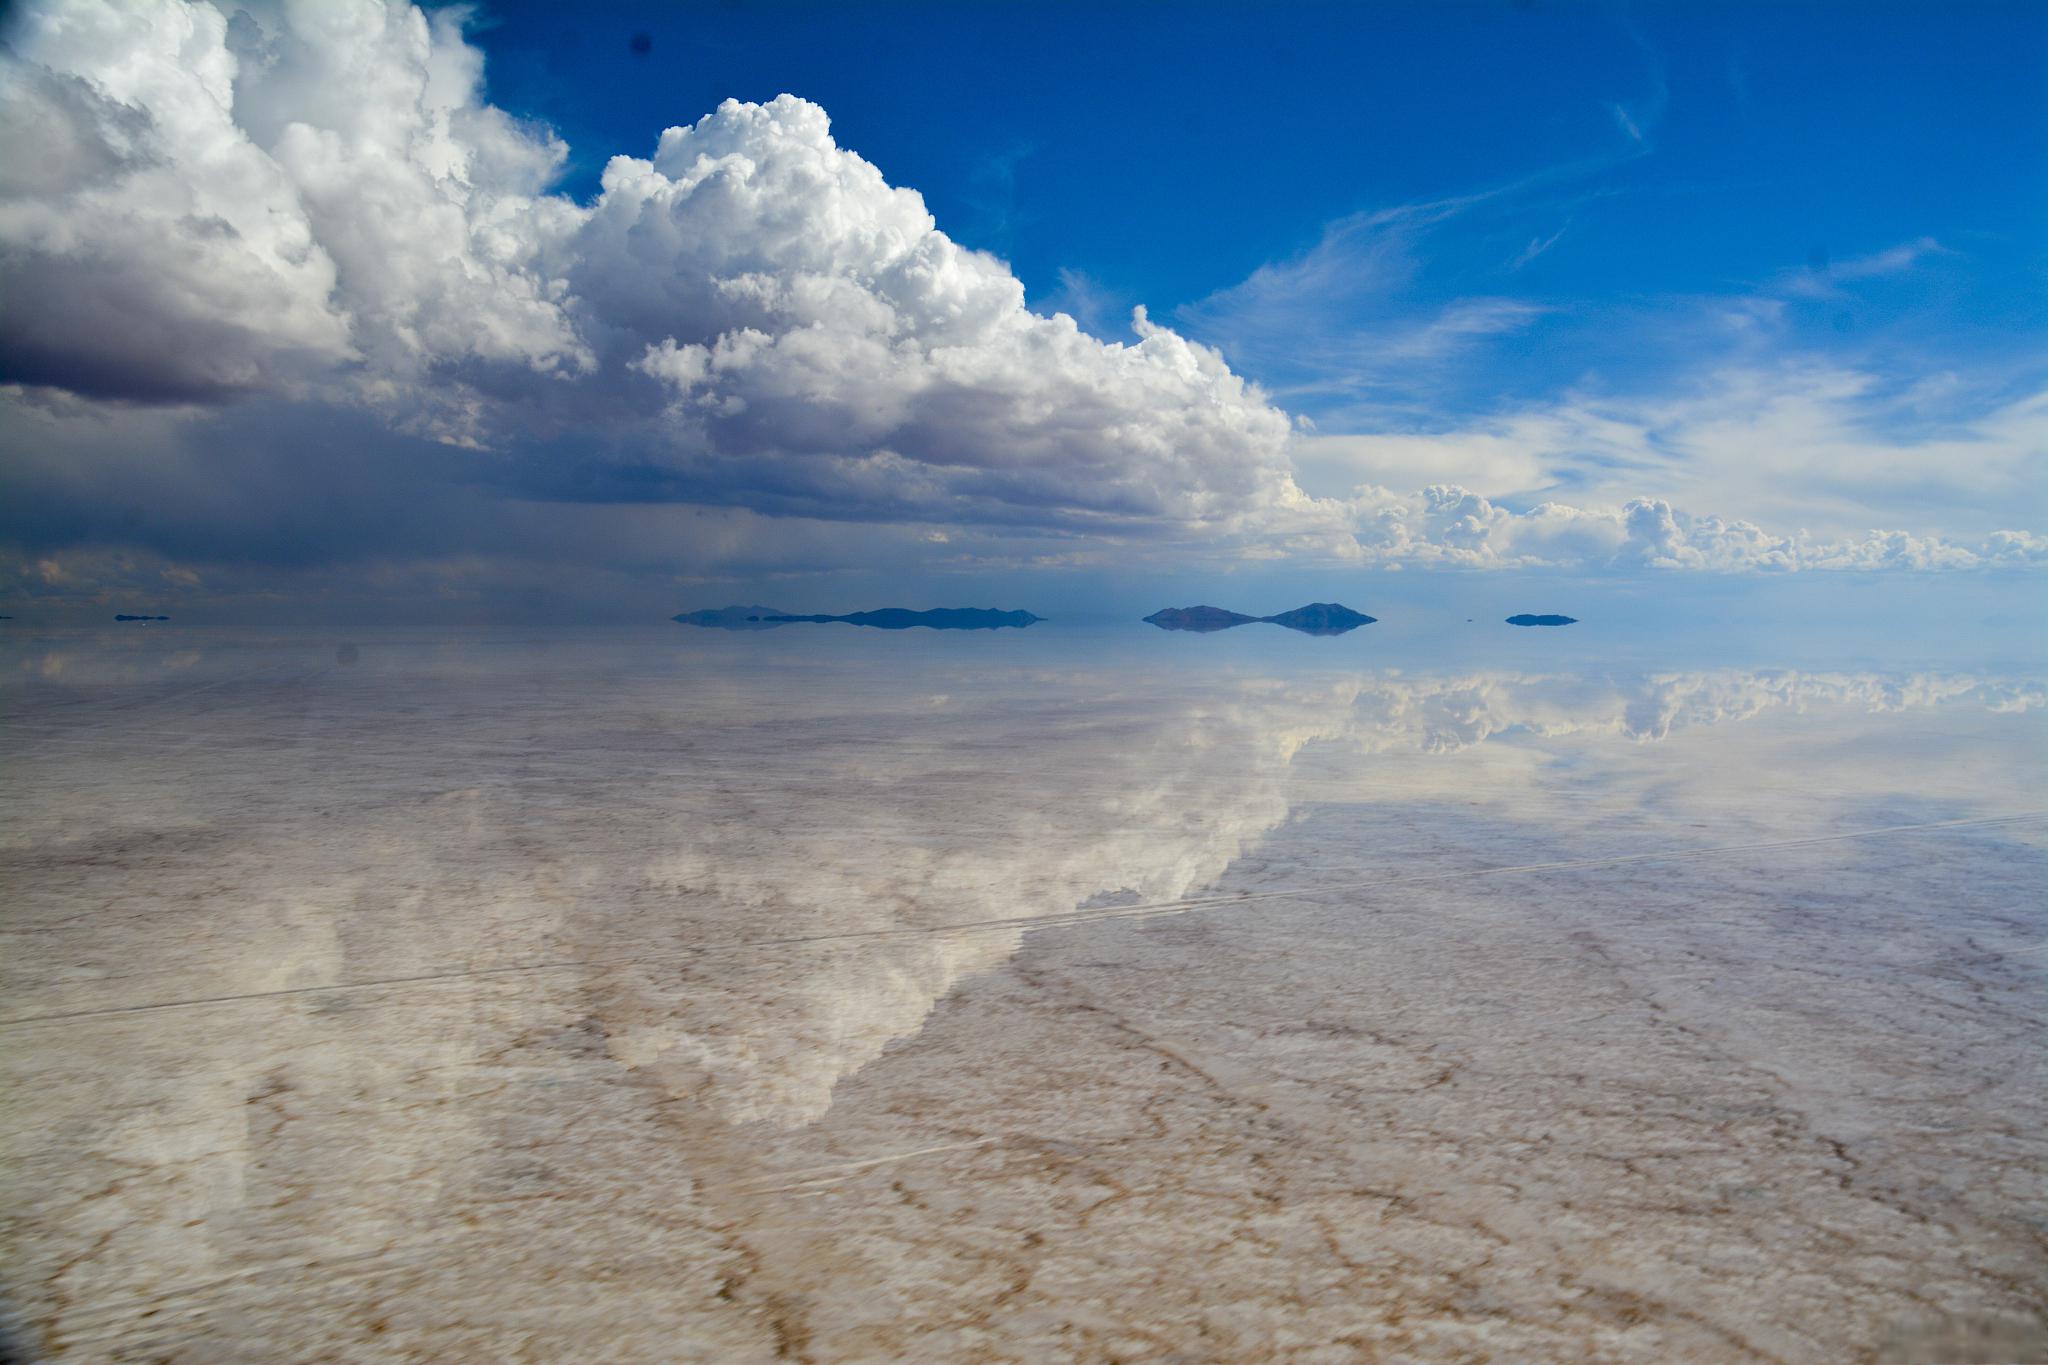 乌尤尼盐湖,玻利维亚最美的景点 玻利维亚,一个位于南美洲内陆的国家